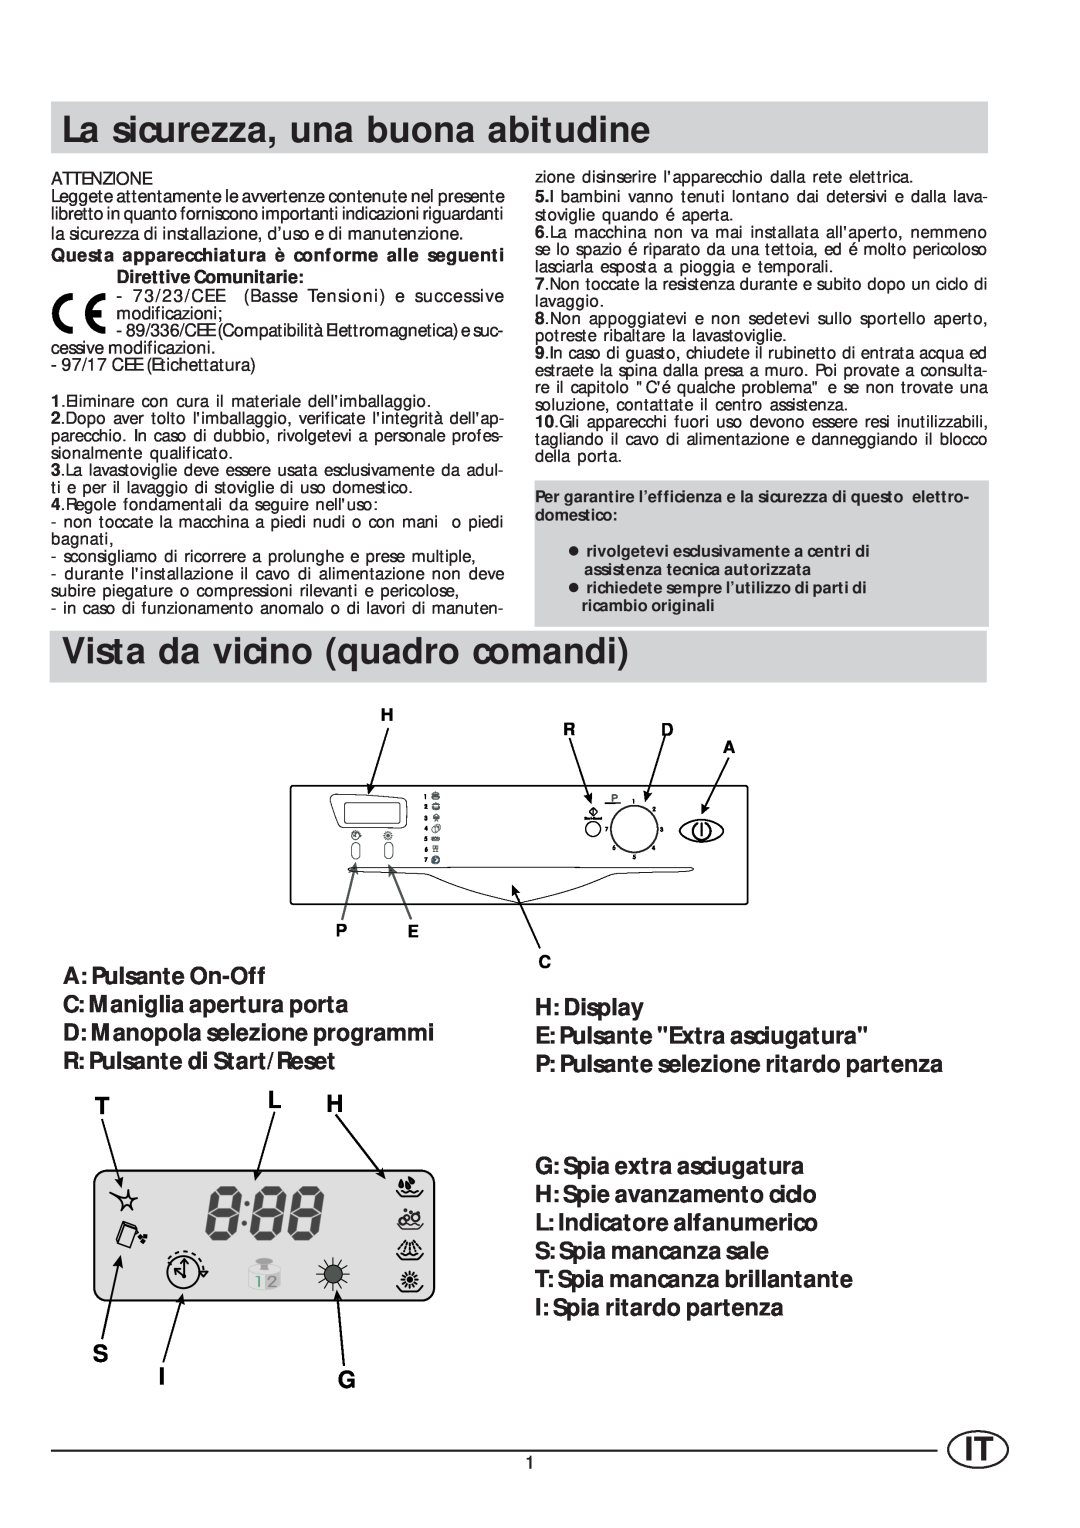 Indesit IDE 45 manual La sicurezza, una buona abitudine, Vista da vicino quadro comandi 